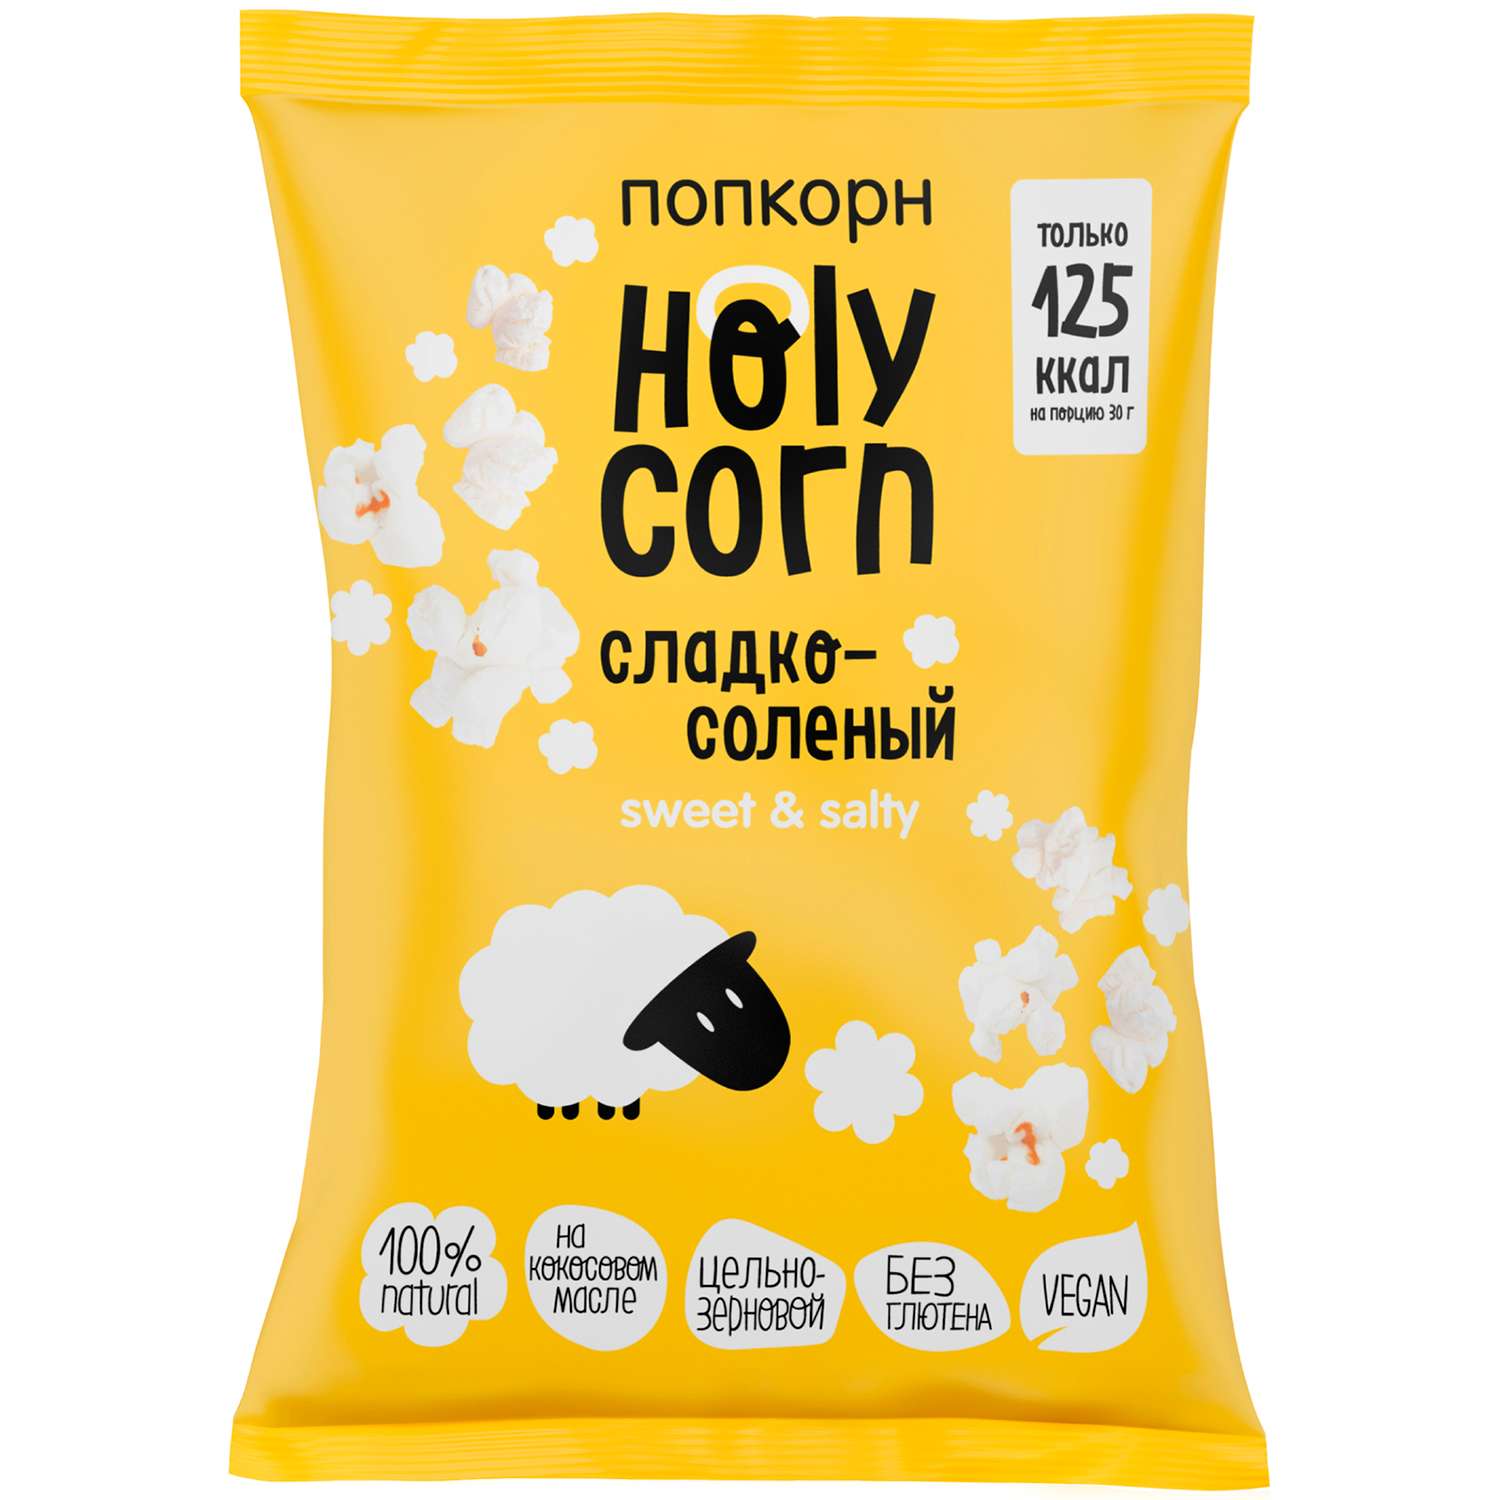 Попкорн Holy Corn сладко-соленый 80г - фото 1